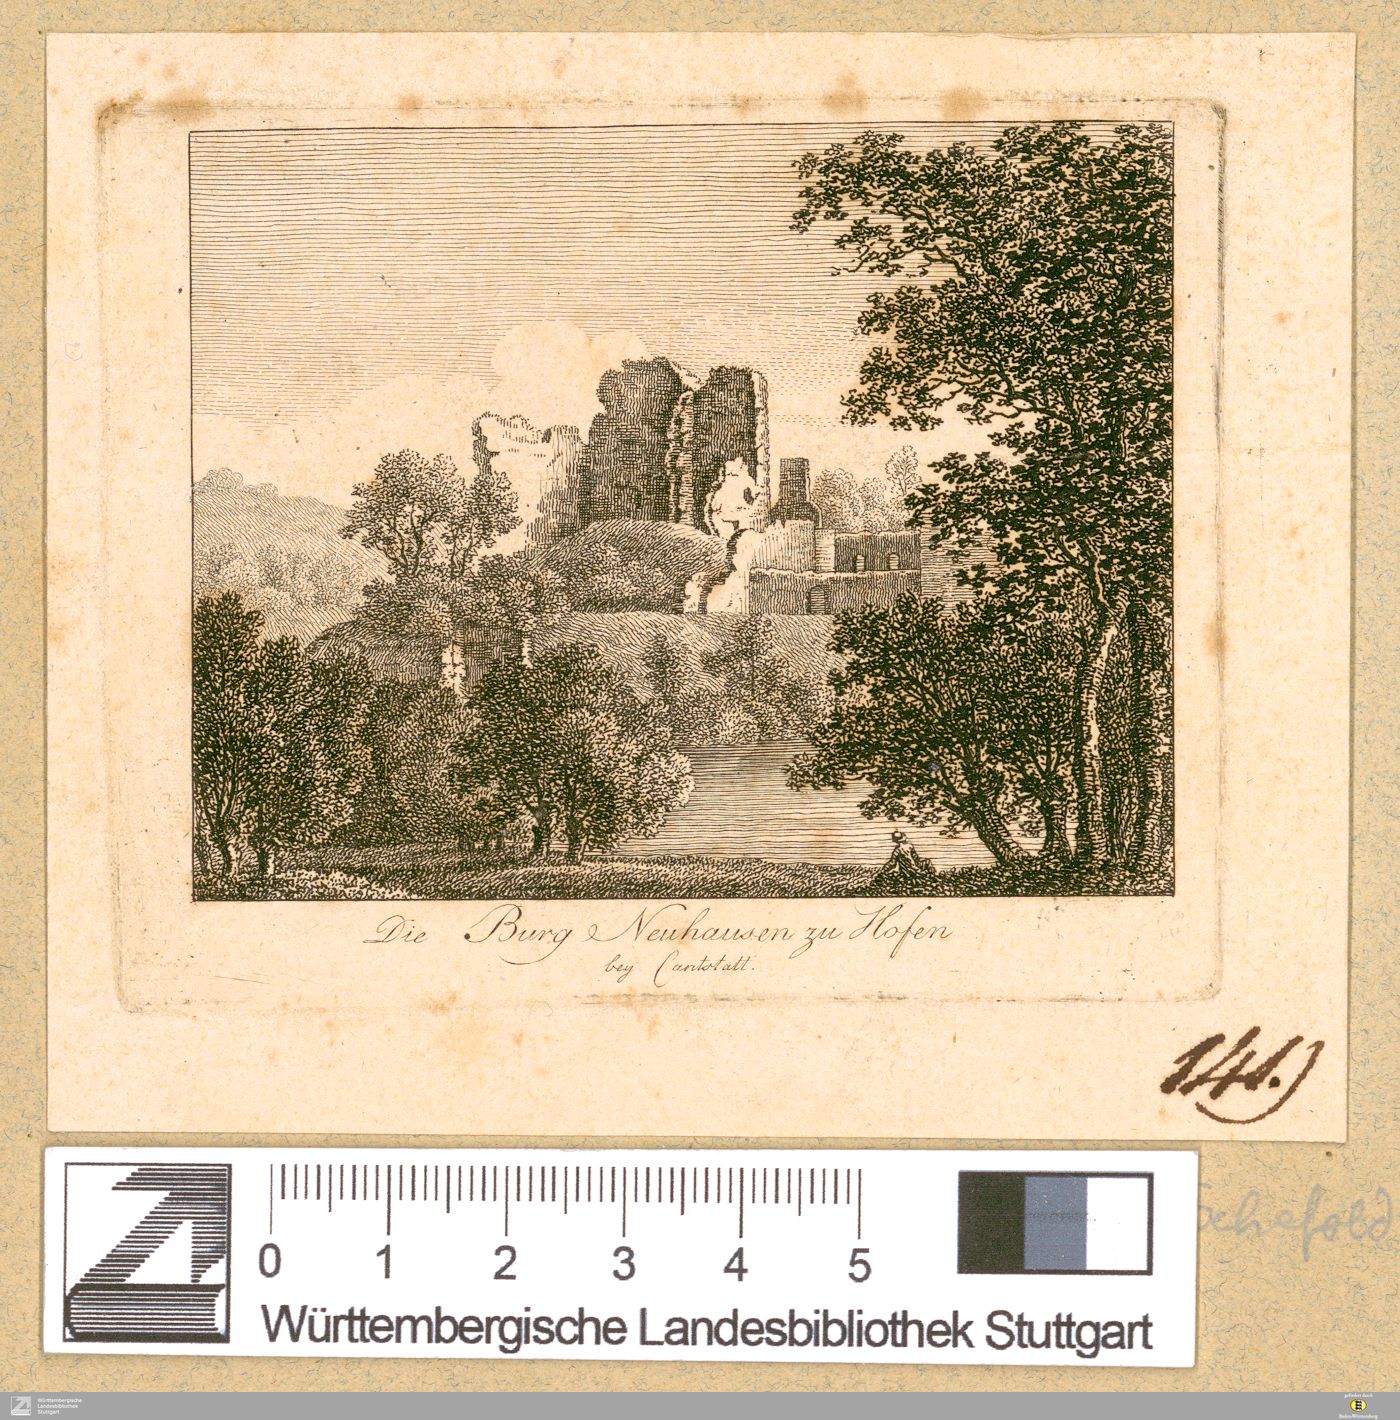 Die Burg Neuhausen zu Hofen bey Cantstatt